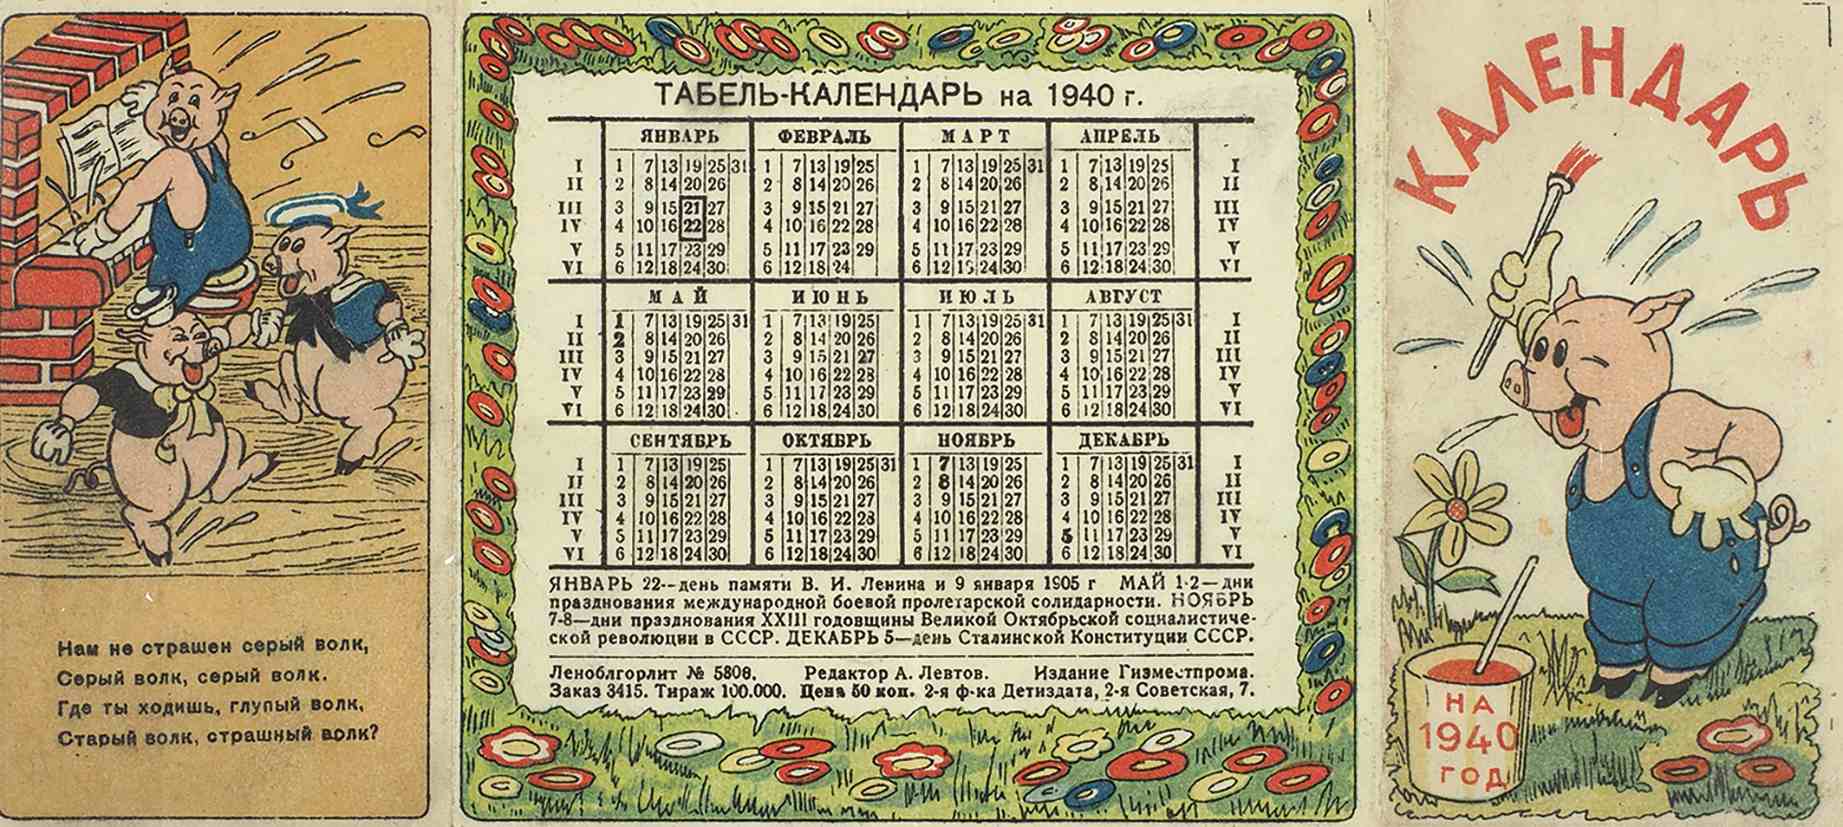 25 октябрь день недели. Календарь 1940 года. Календарь 1939 года. Календарь СССР 1940. Календарь 1939 года по месяцам.